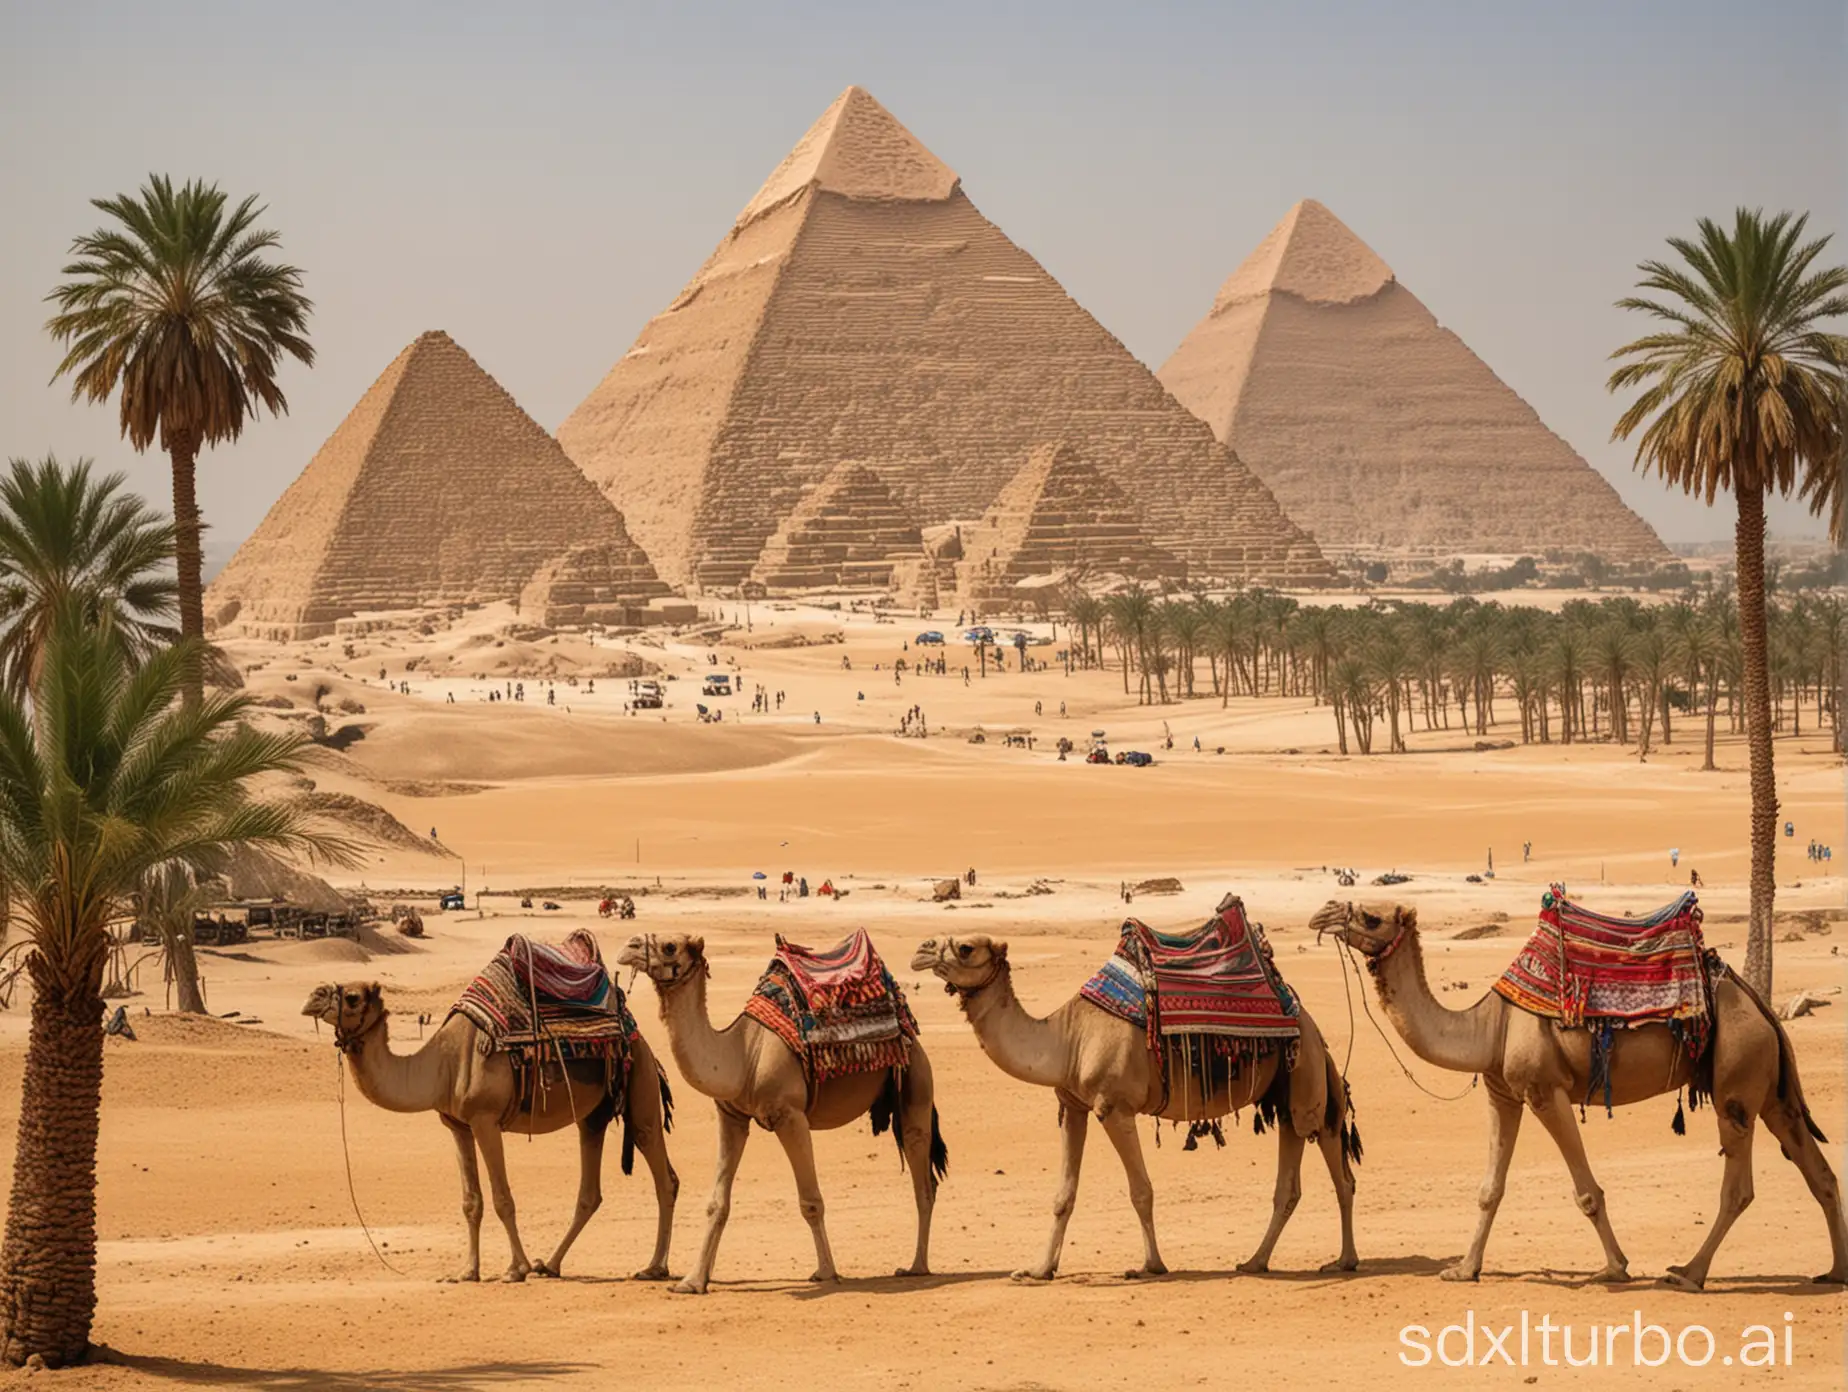 Hintergrund pyramiden von gizeh, im vordergrund oase mit palmen und einer kamel karawane